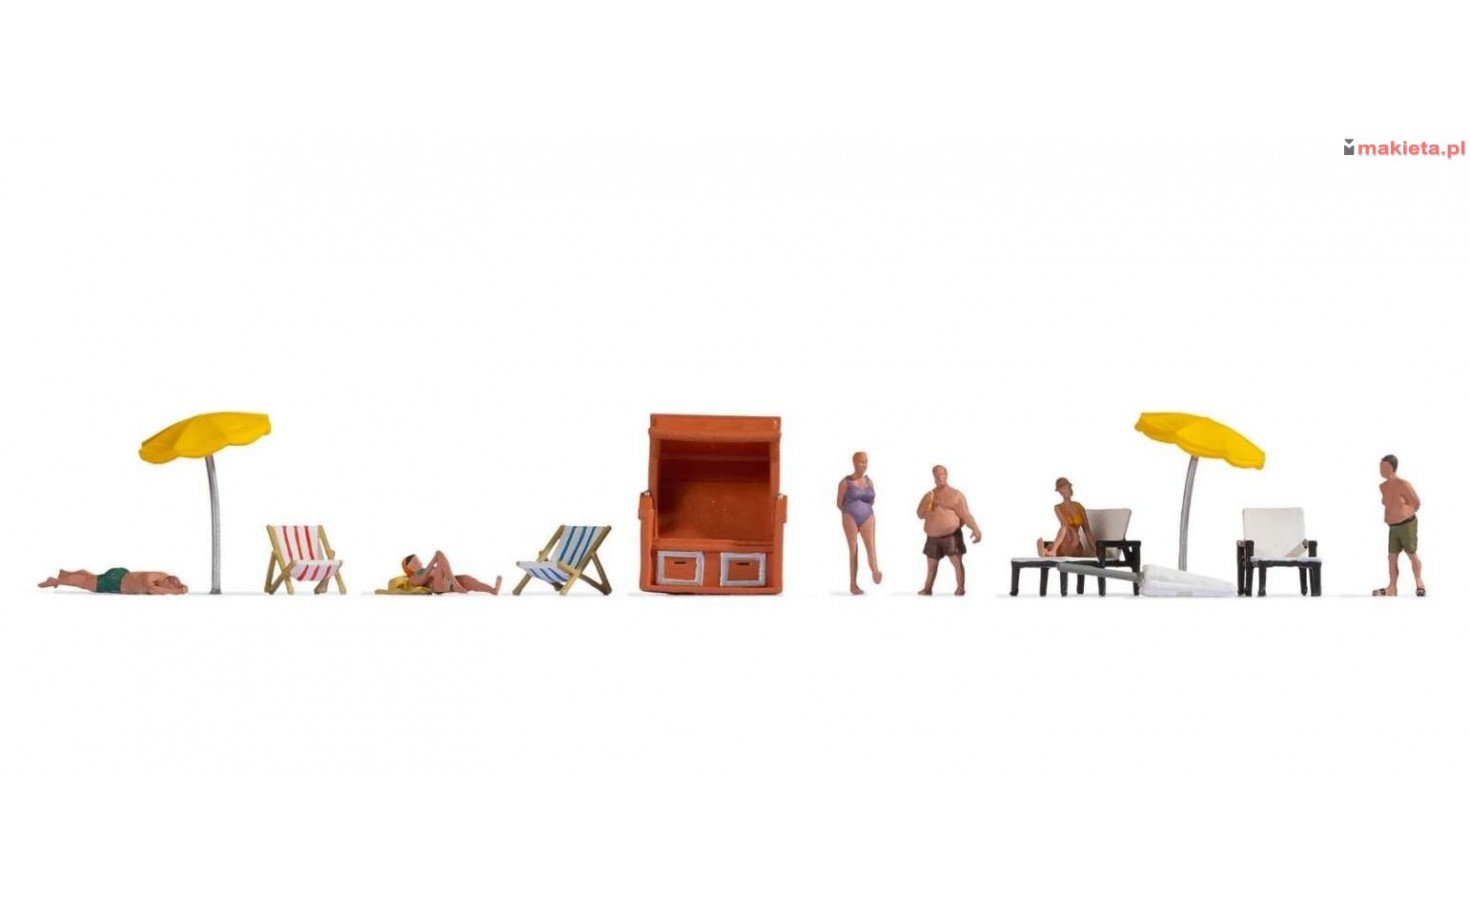 NOCH 16205. Na plaży, scenka tematyczna, figurki i akcesoria, duży zestaw, skala H0.